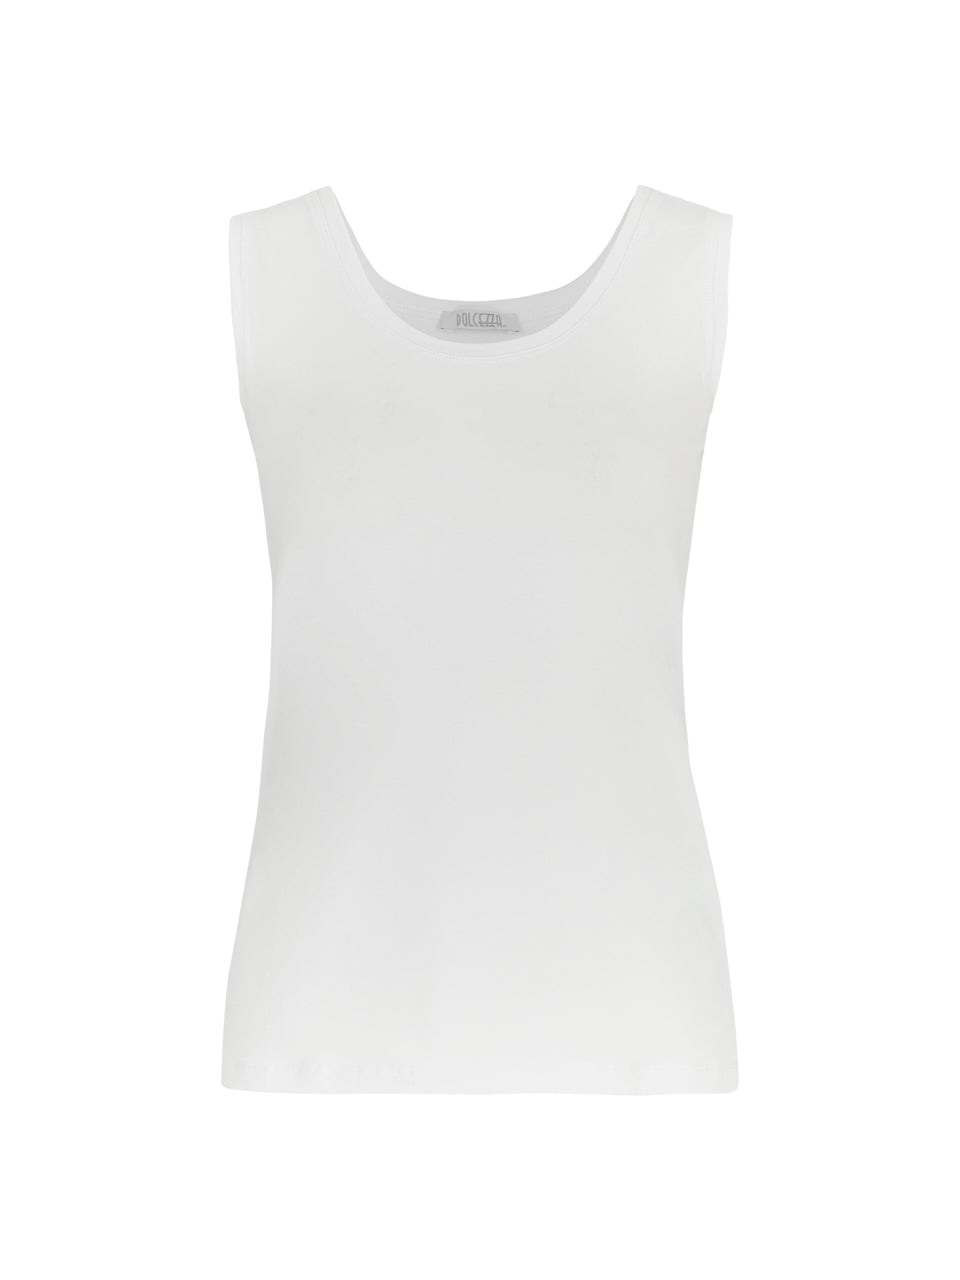 Dolcezza 24502 sleeveless vest top